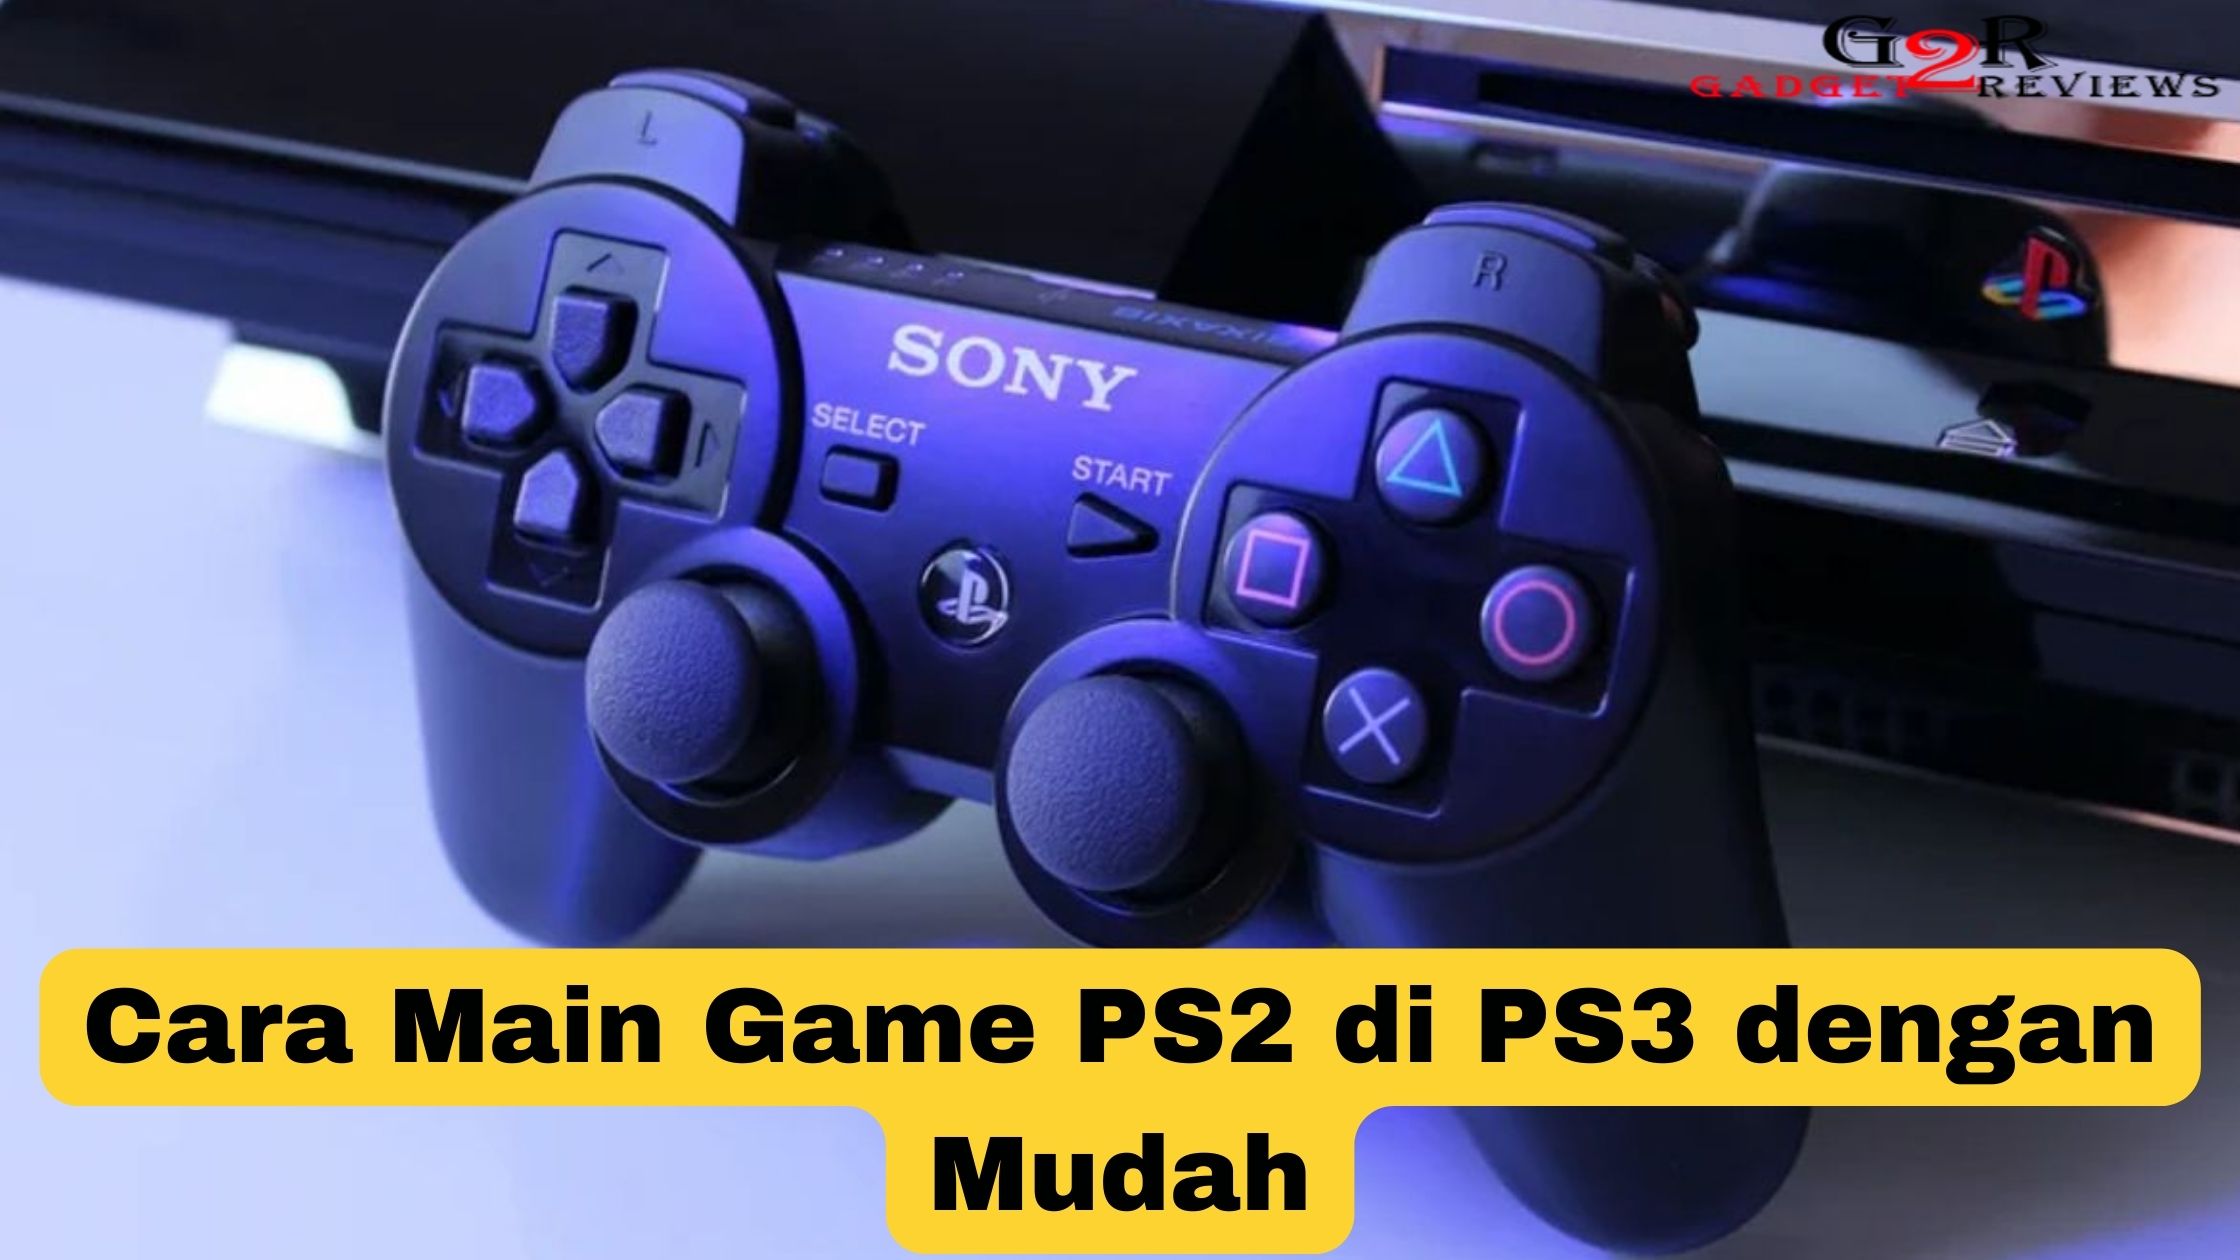 Cara Main Game PS2 di PS3 dengan Mudah